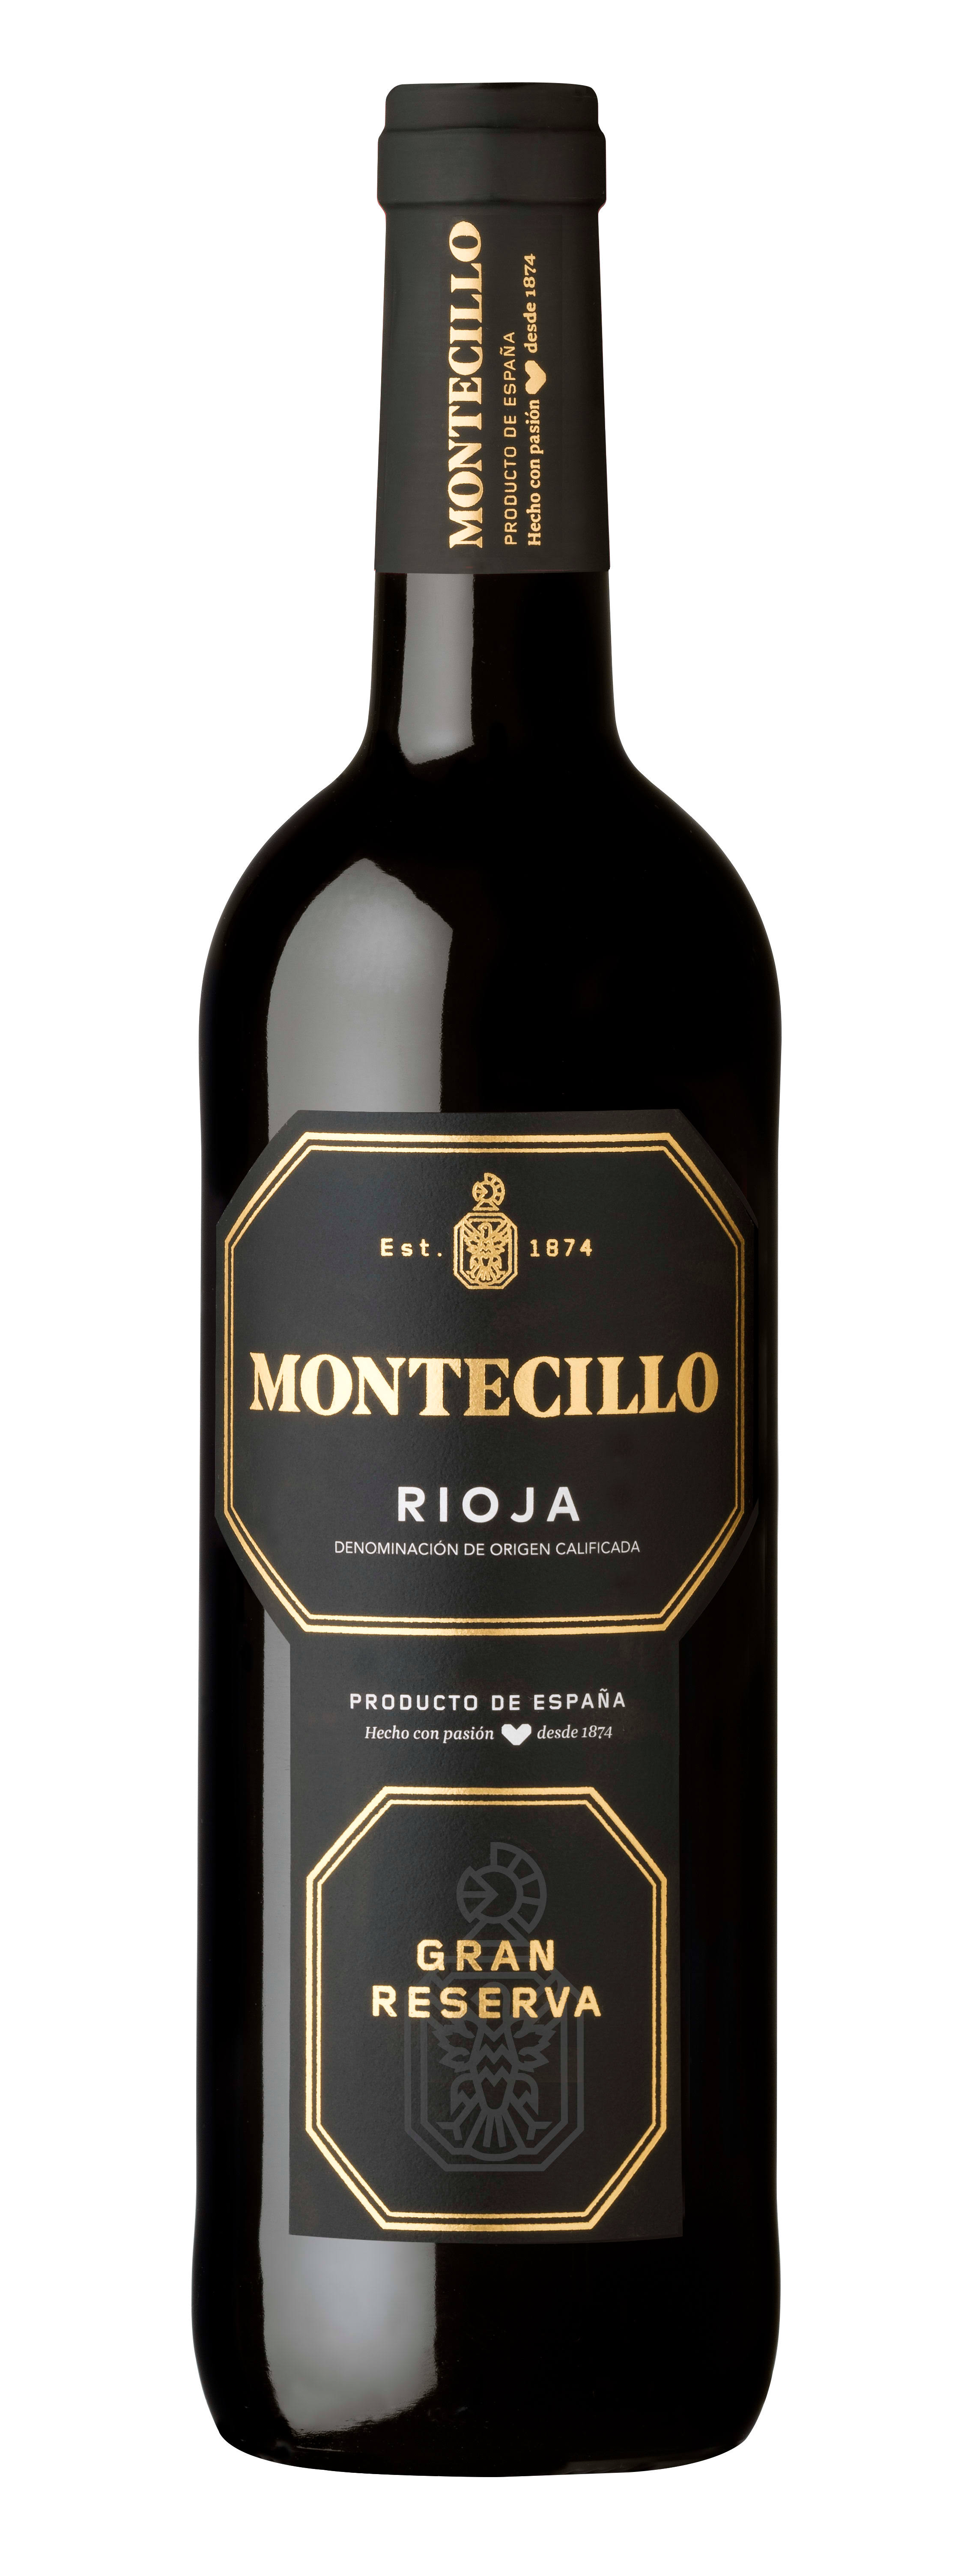 Montecillo Rioja Gran Reserva Wine - La Rioja, Spain